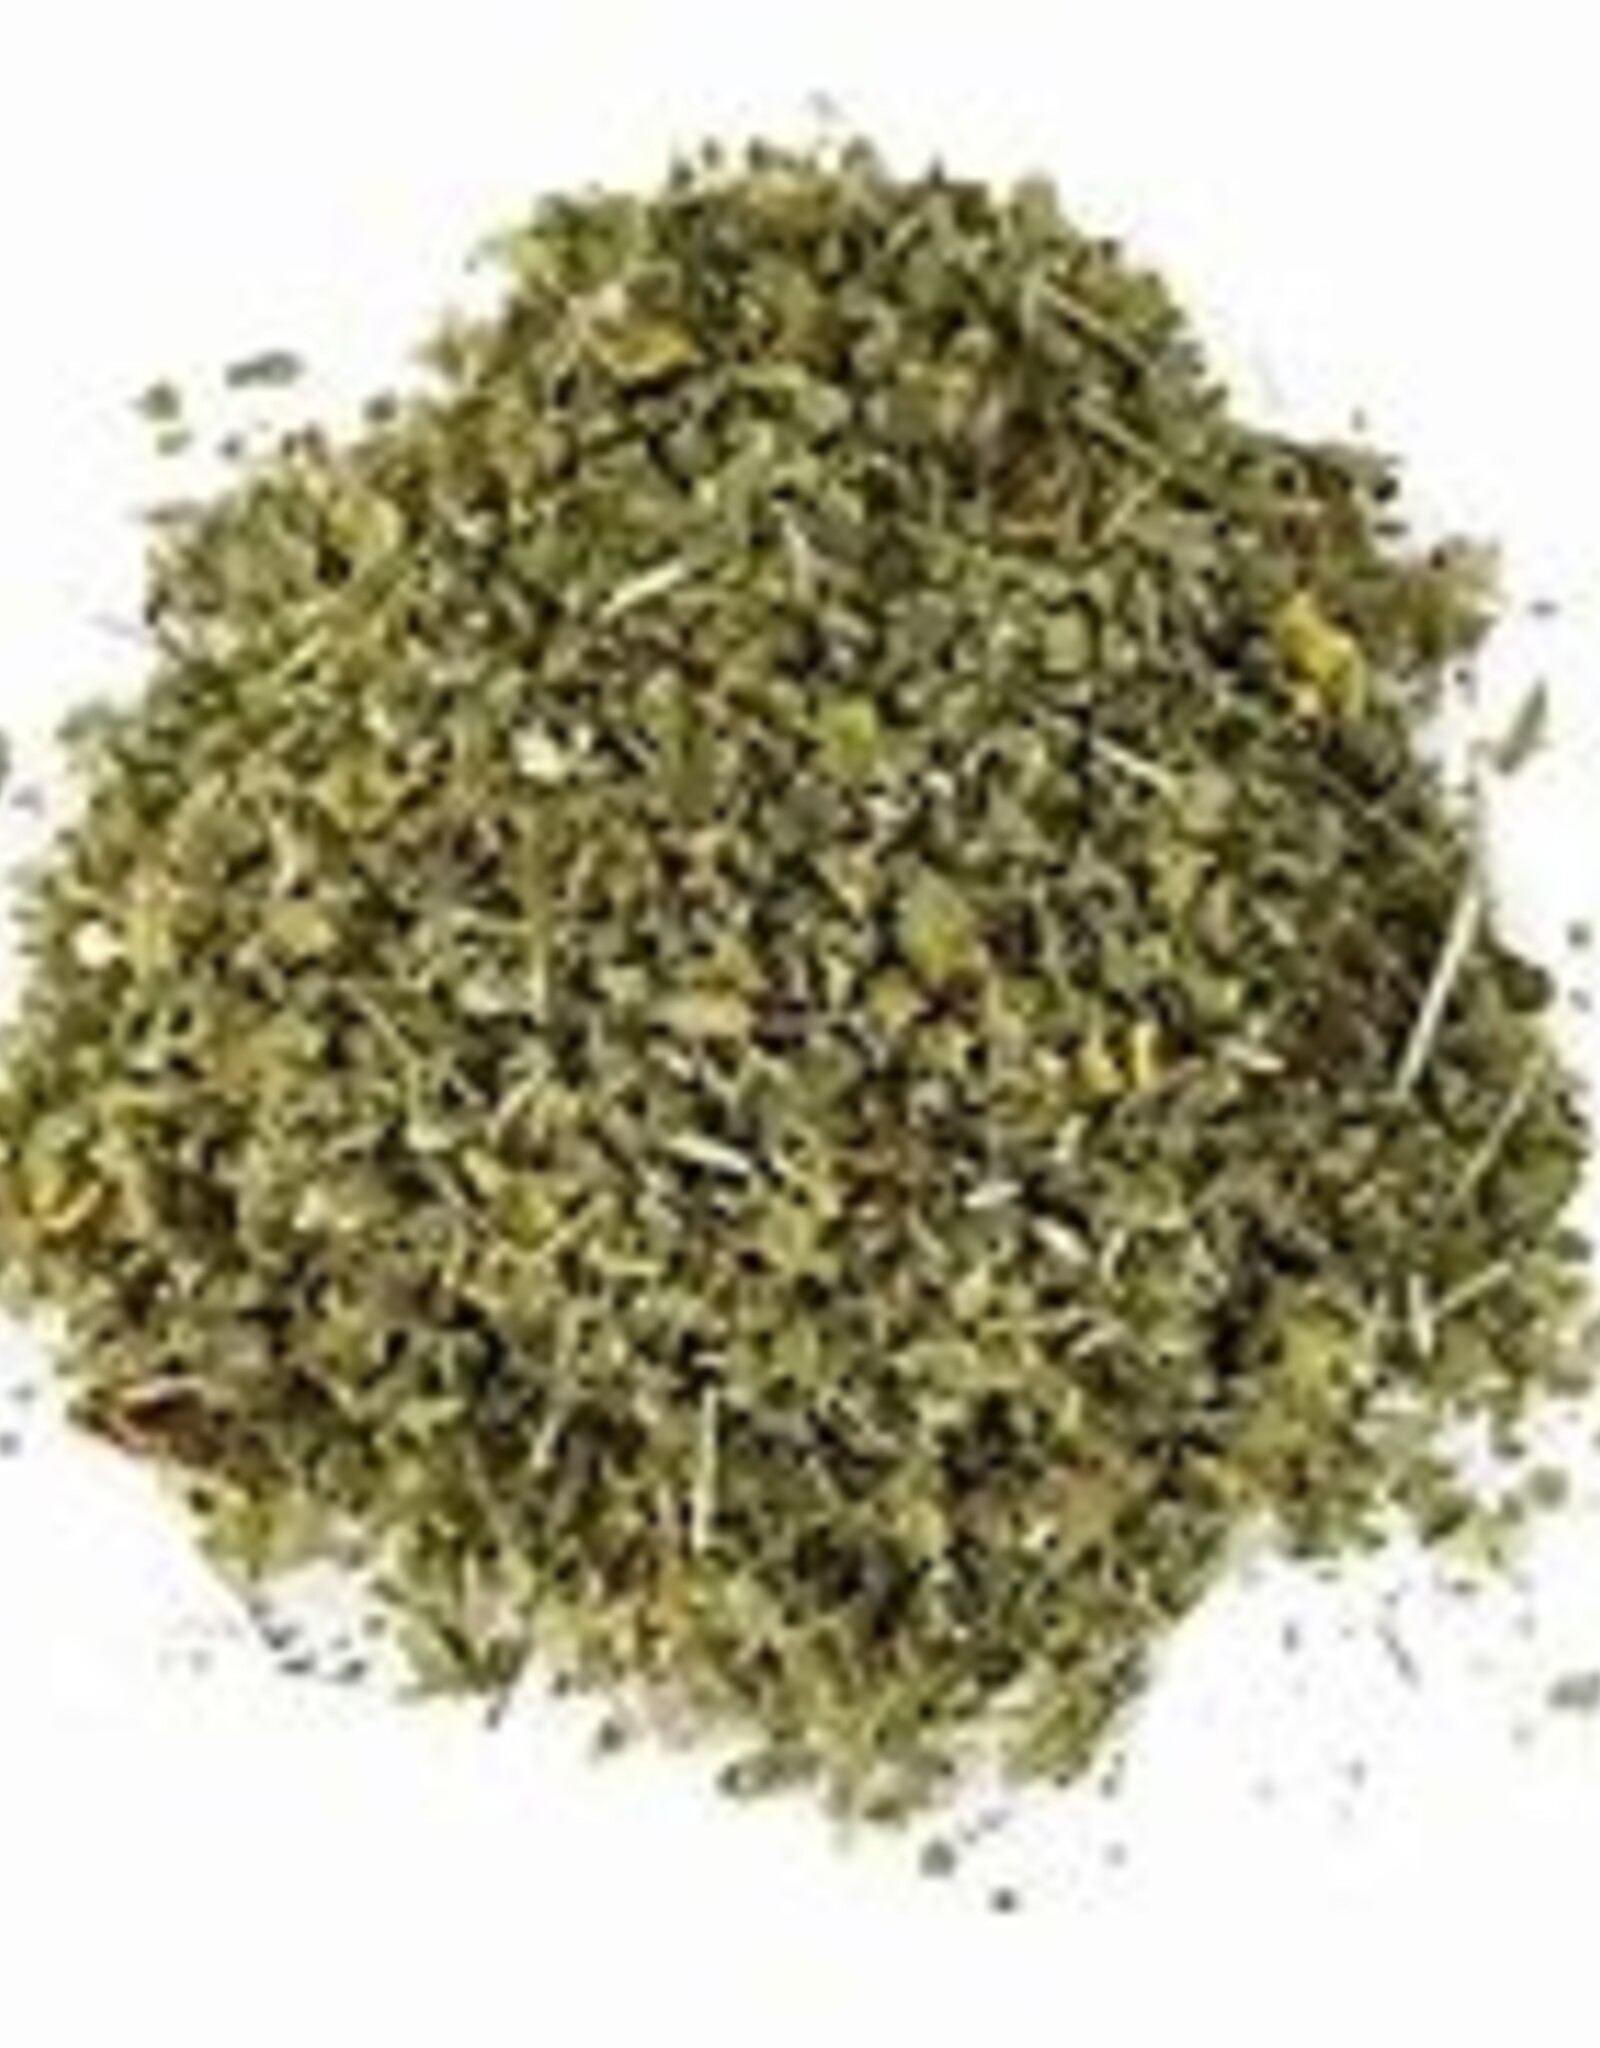 Marshmallow Leaf herb 1 oz